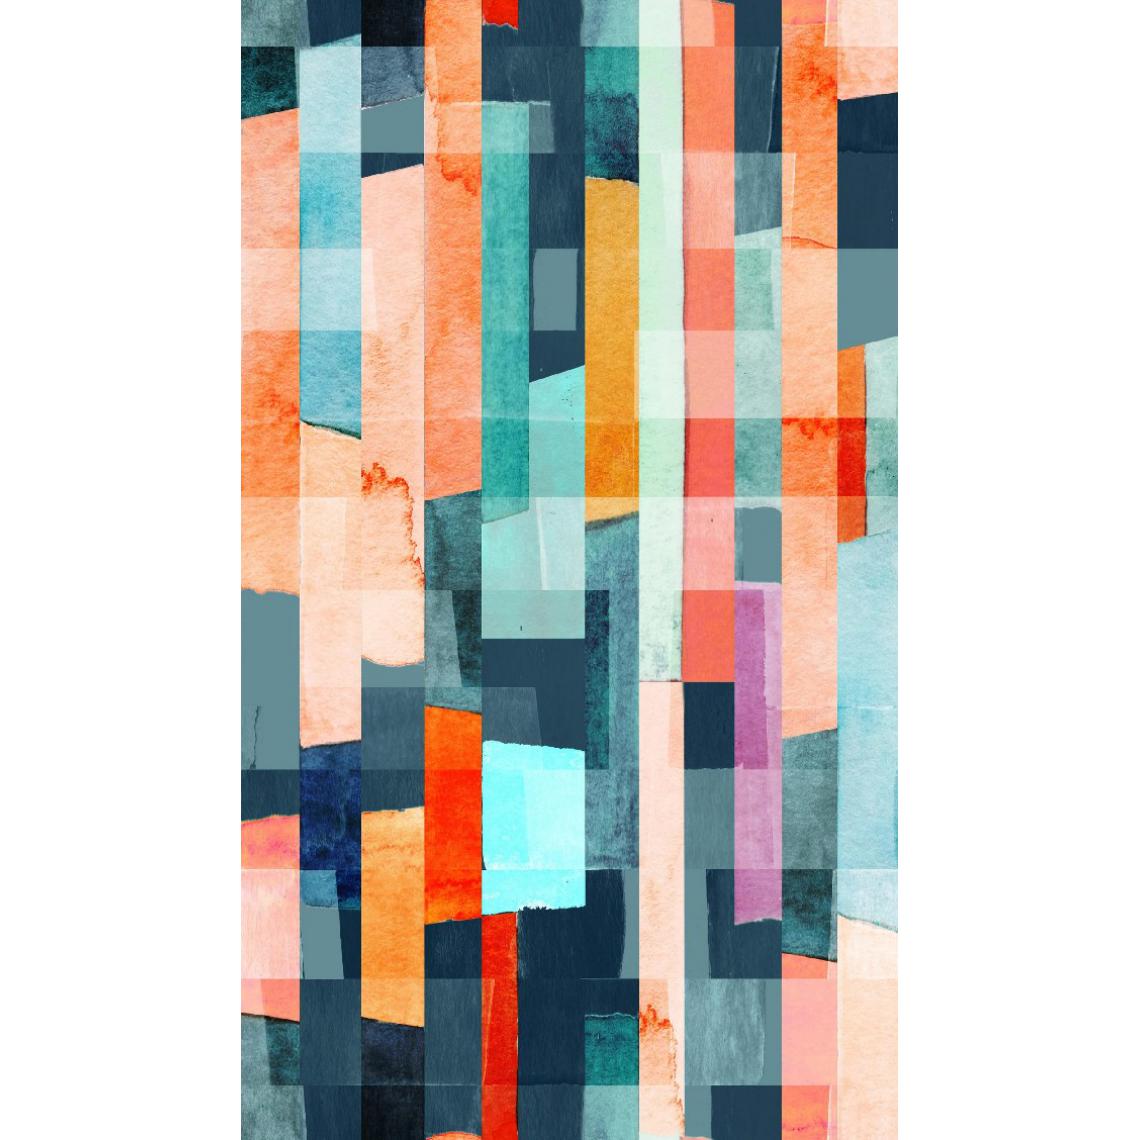 Homemania - HOMEMANIA Tapis Imprimé Colored Parquet 1 - Géométrique - Décoration de Maison - Antidérapant - Pour Salon, séjour, chambre à coucher - Multicolore en Polyester, Coton, 120 x 180 cm - Tapis